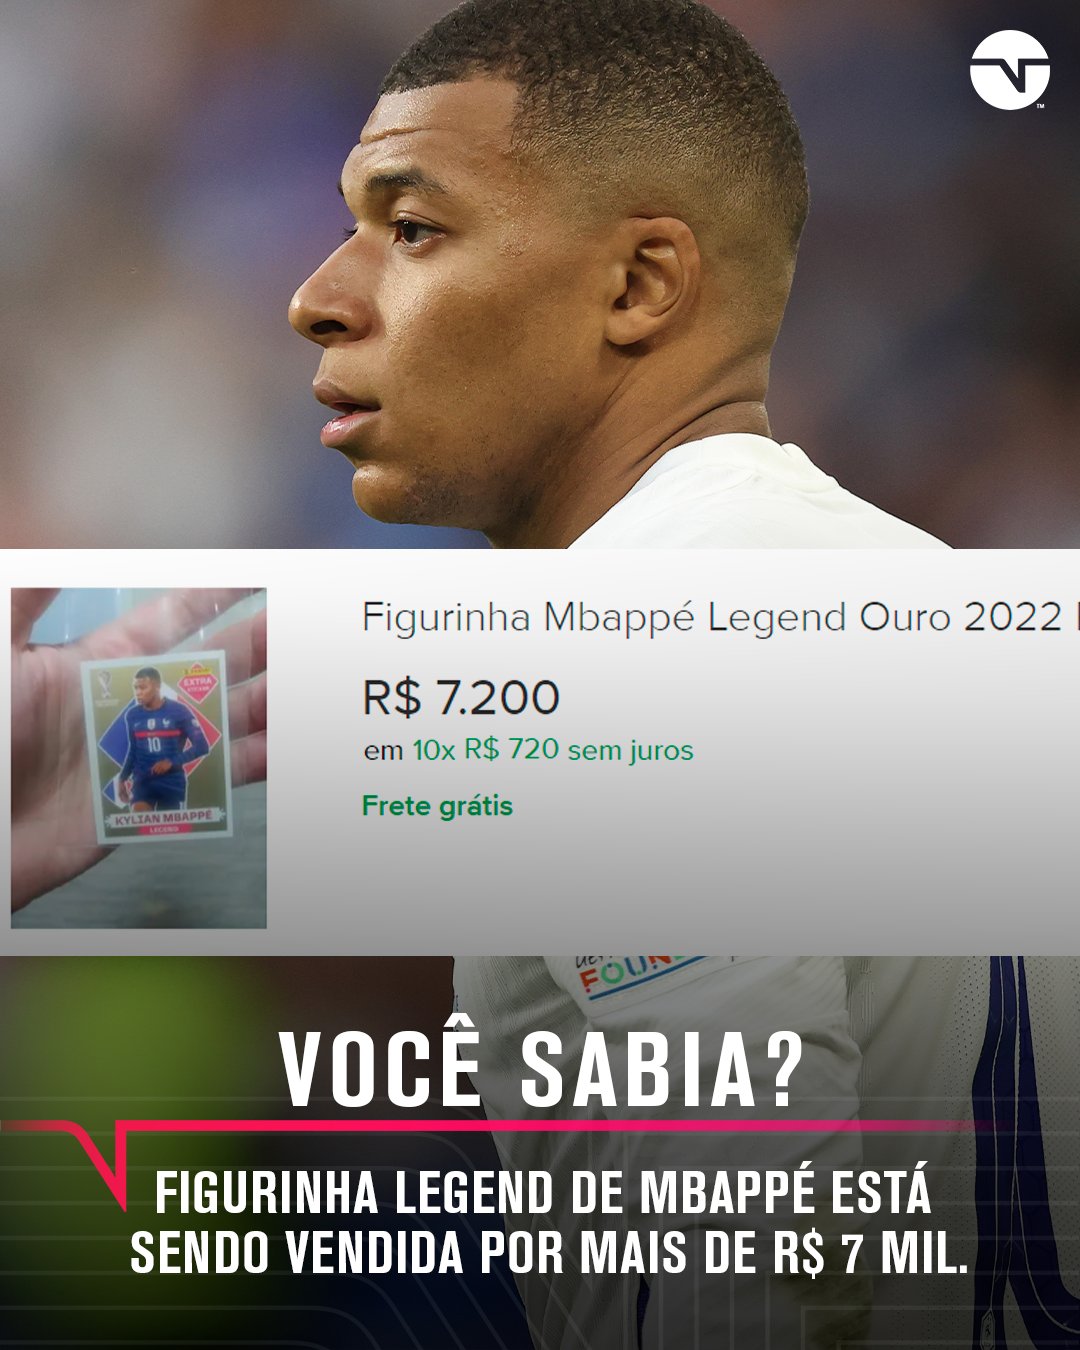 TNT Sports Brasil - No pacote de figurinha do PSG, qual jogador